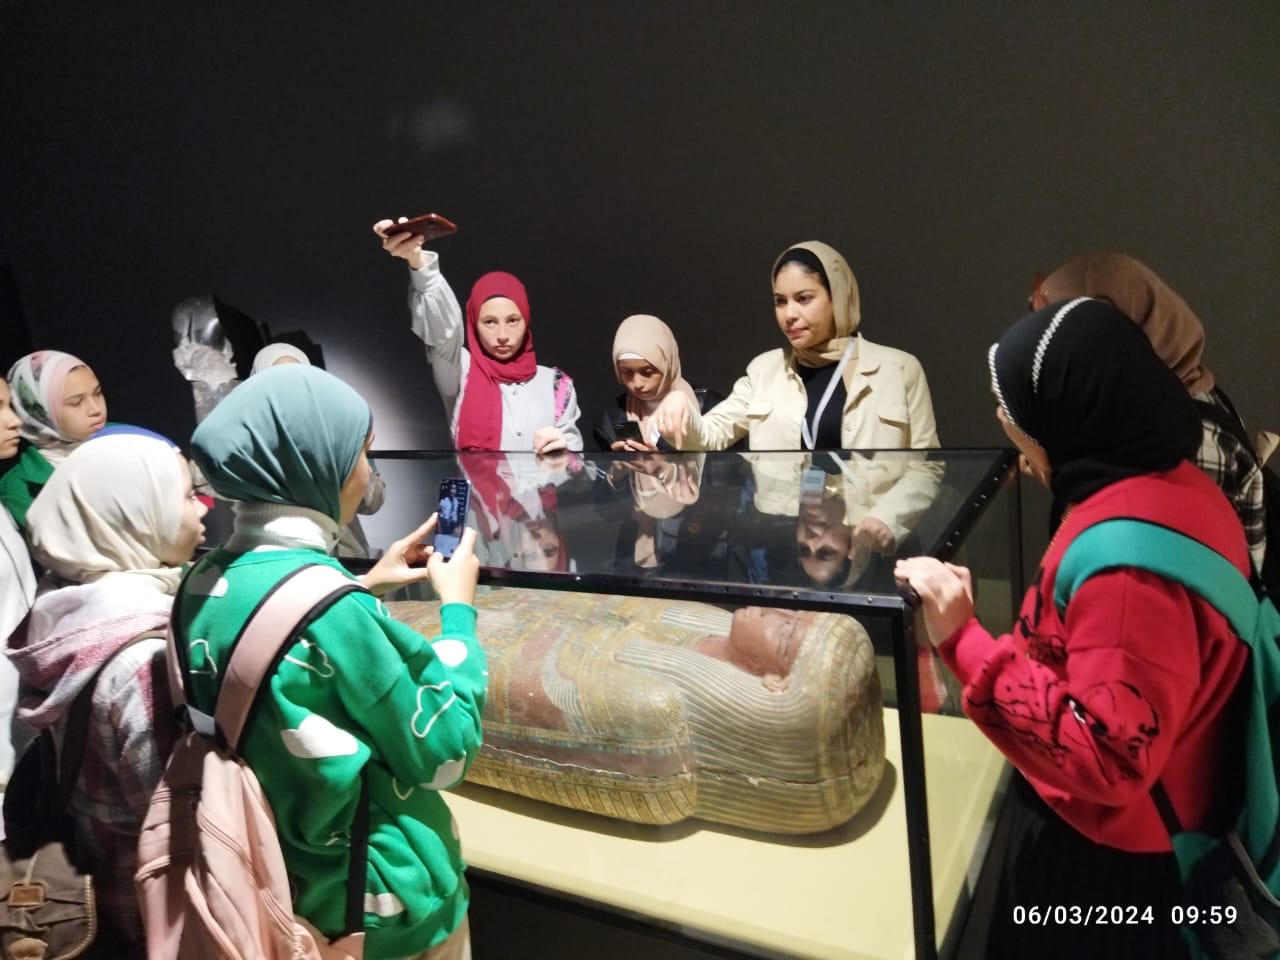 زيارات طلابية لمتحف كفر الشيخ